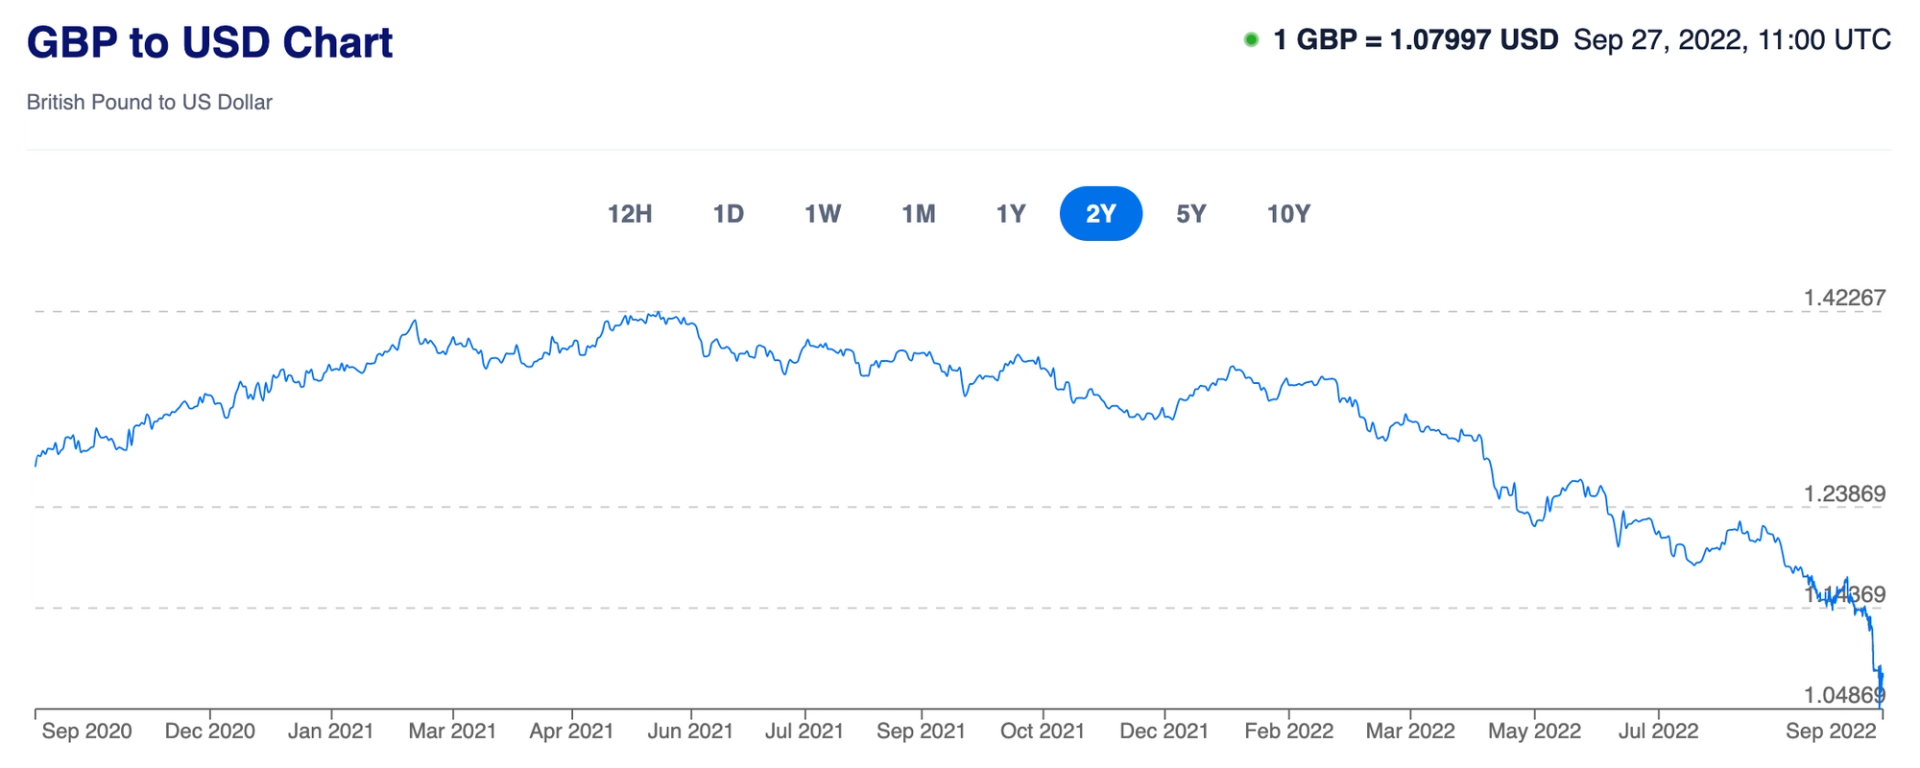 £ GBP vs. $ USD 2 Year Trend - www.xe.com